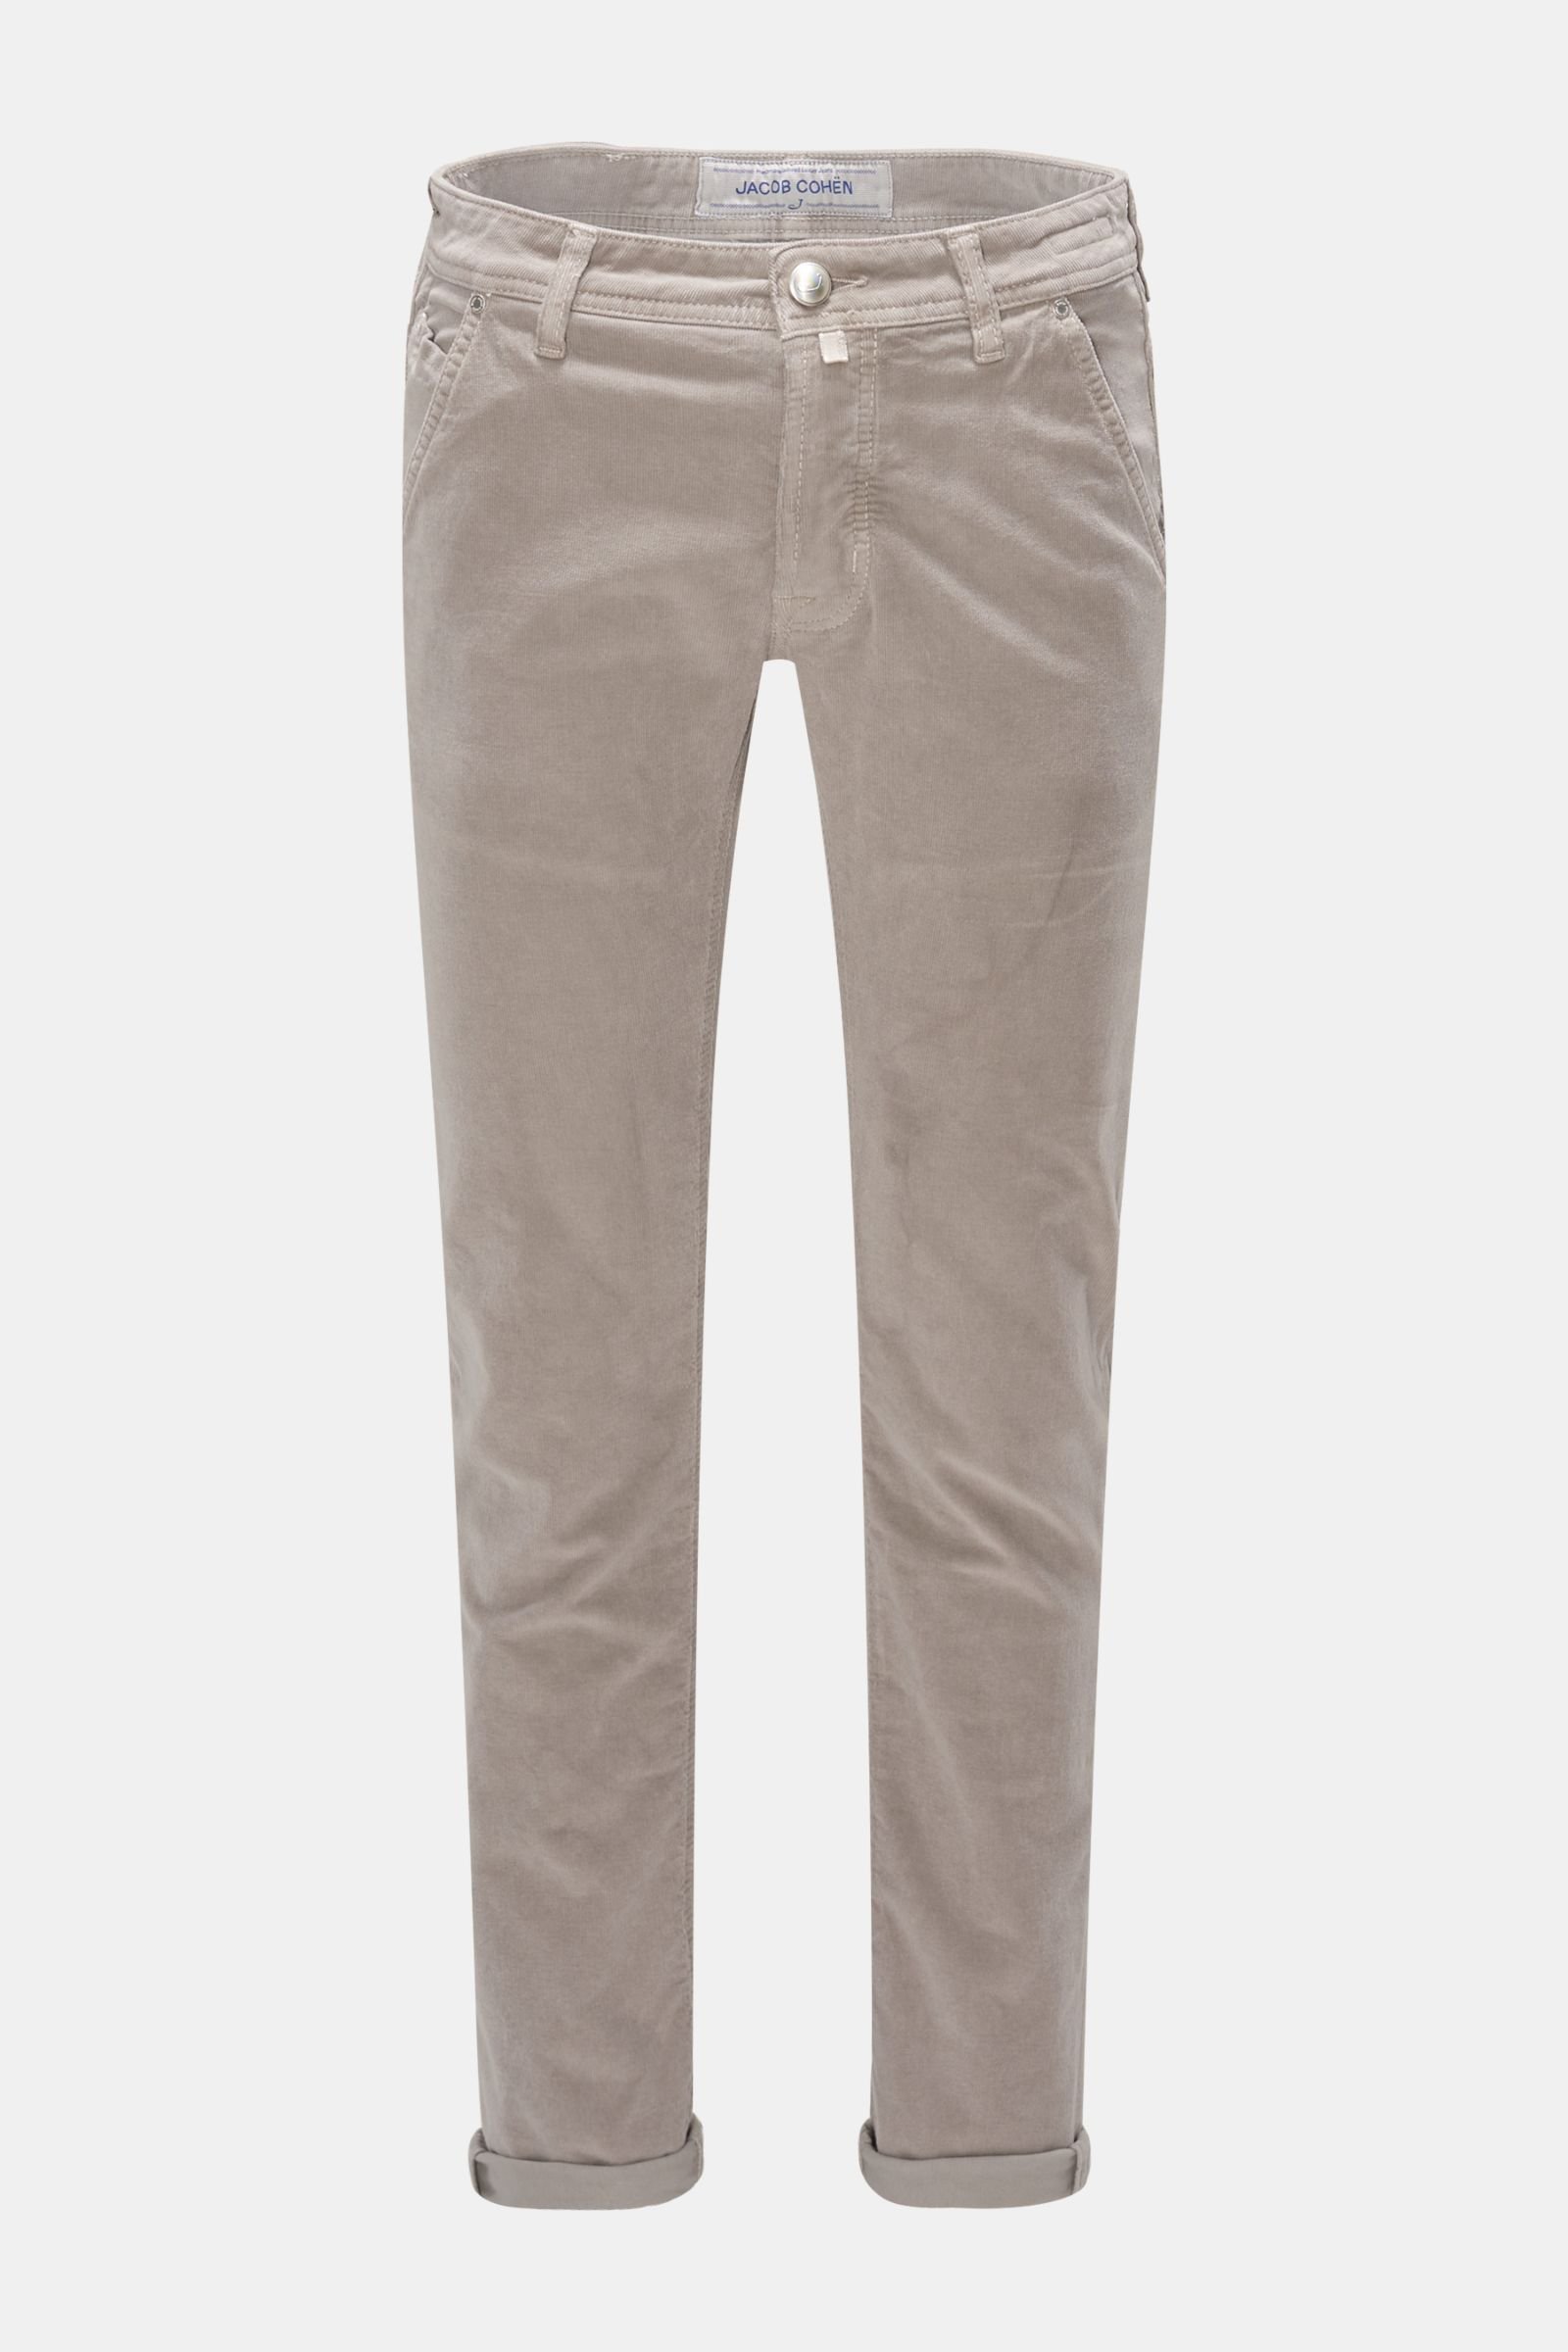 Corduroy trousers 'J613 Comfort Slim Fit' grey brown